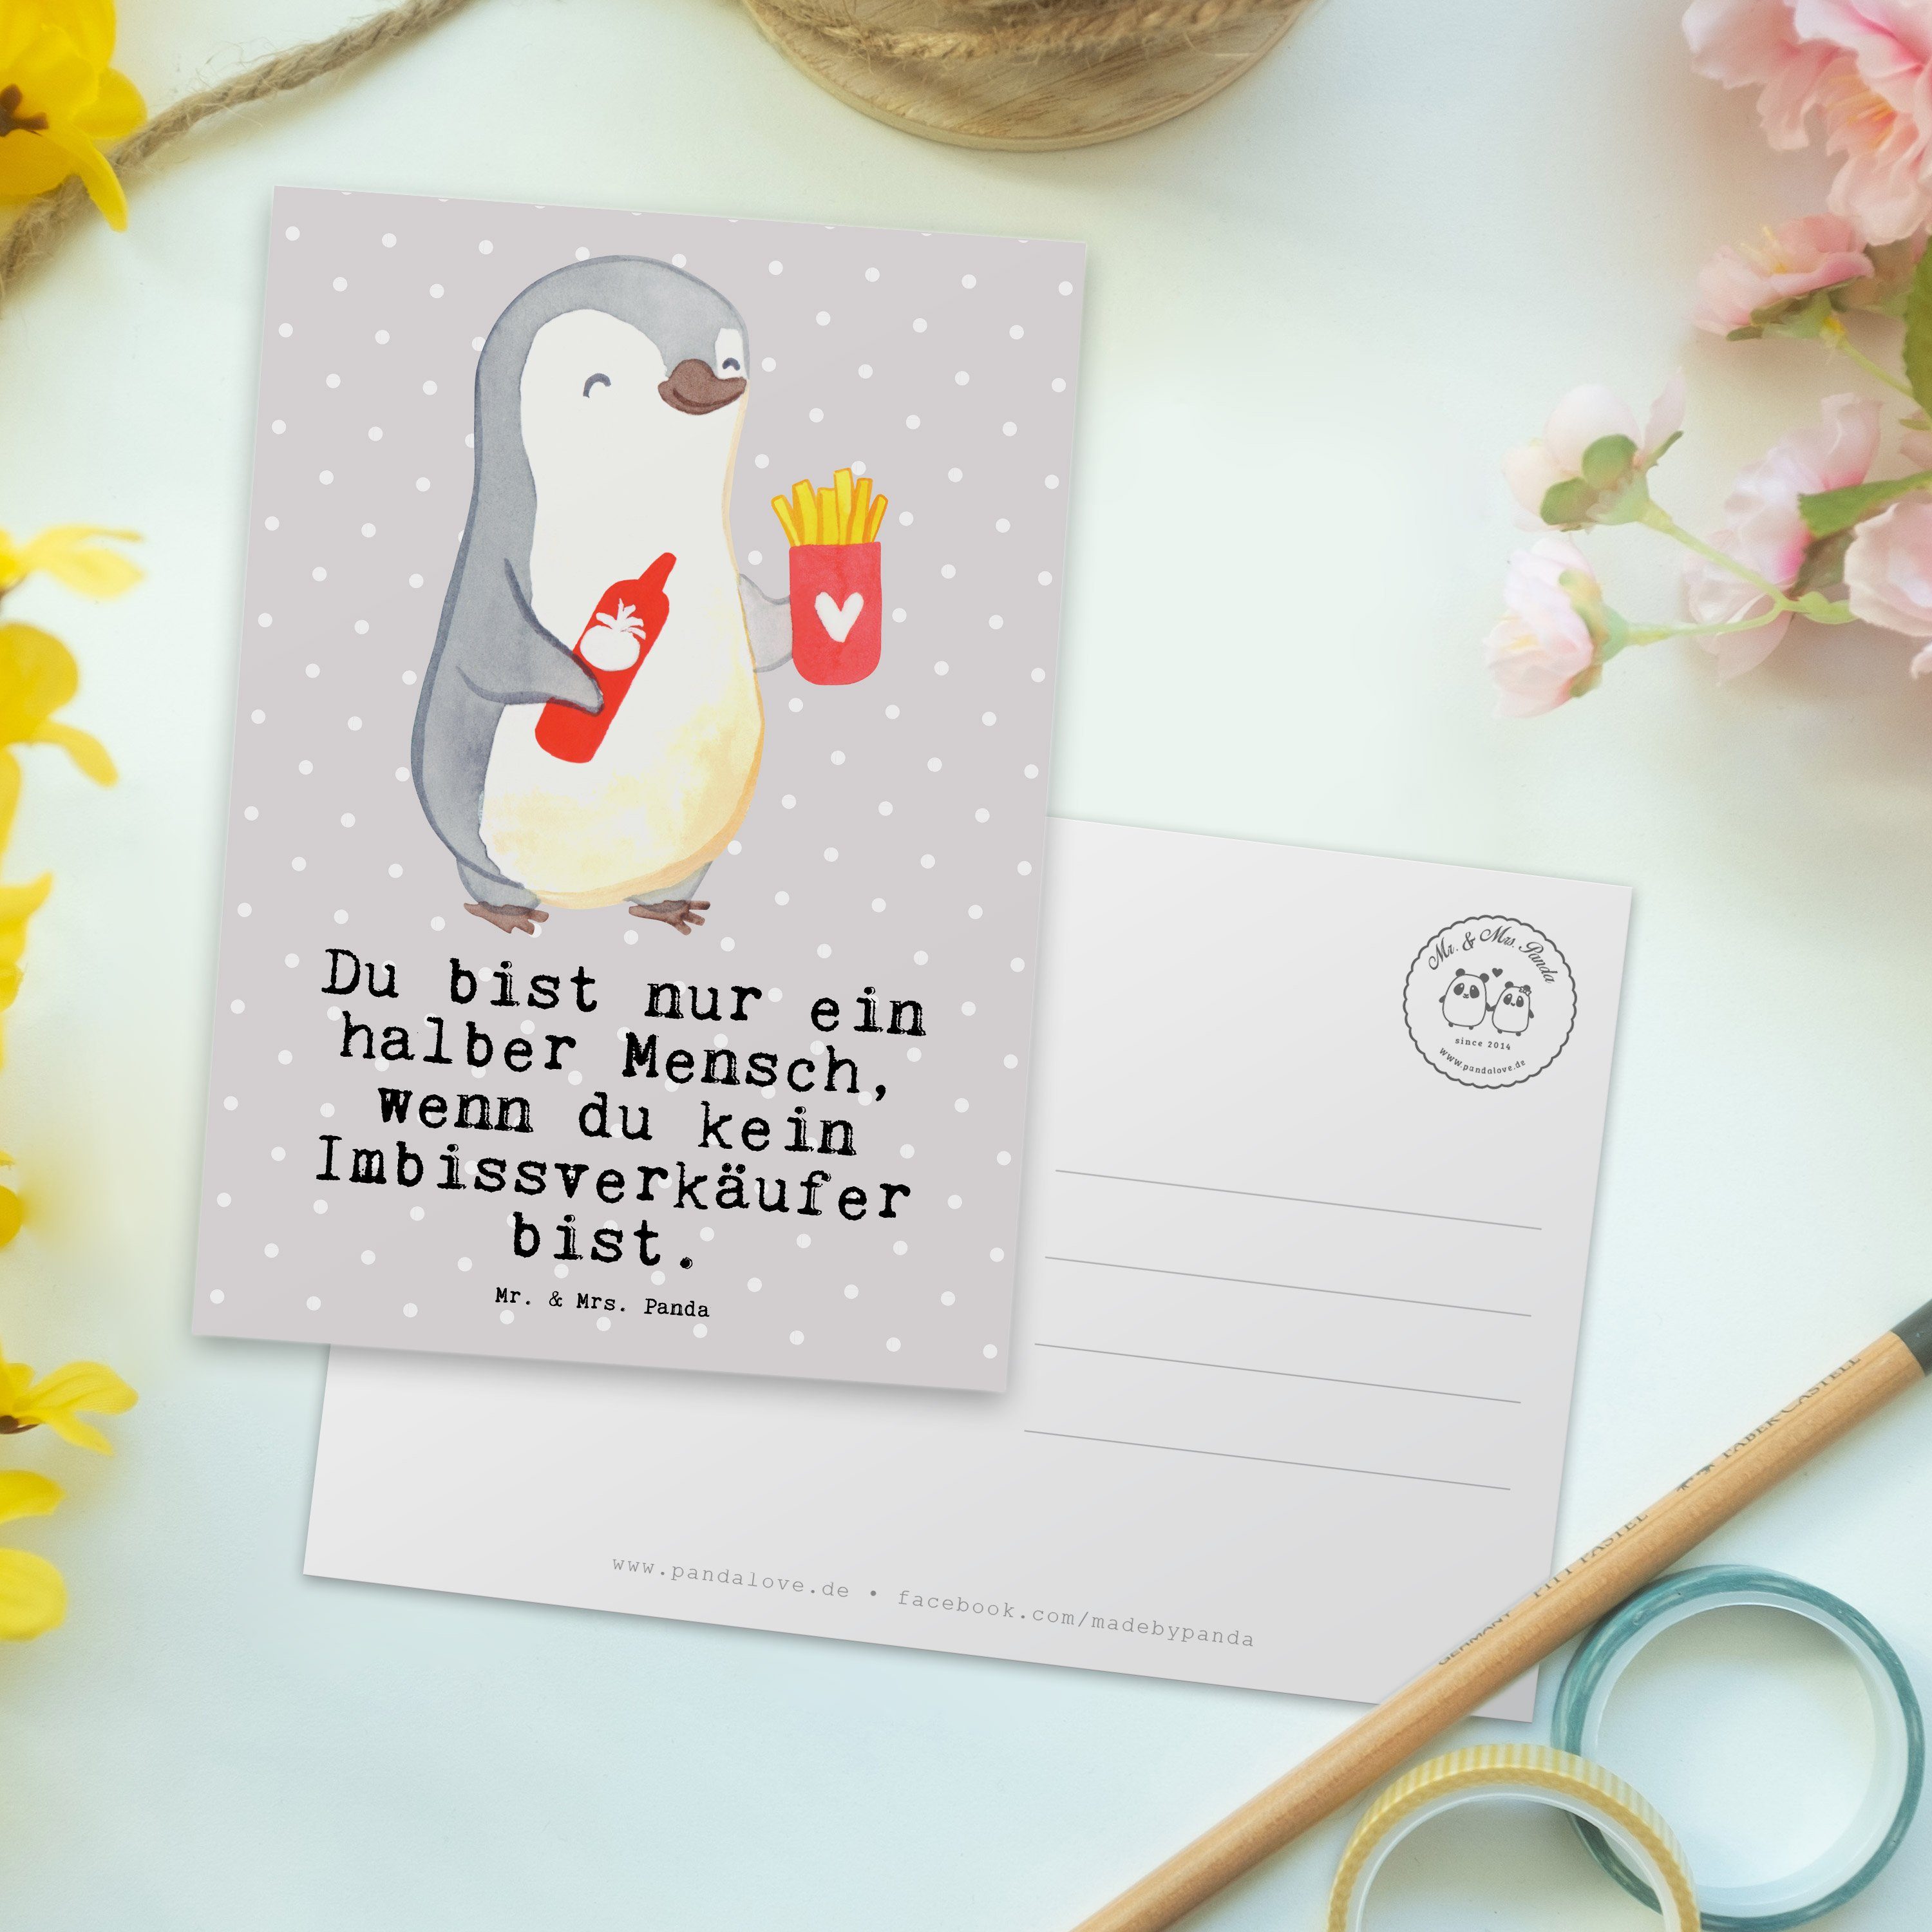 Mr. & Mrs. Panda Postkarte Imbissverkäufer mit Herz - Grau Pastell - Geschenk, Pommesliebe, Fast